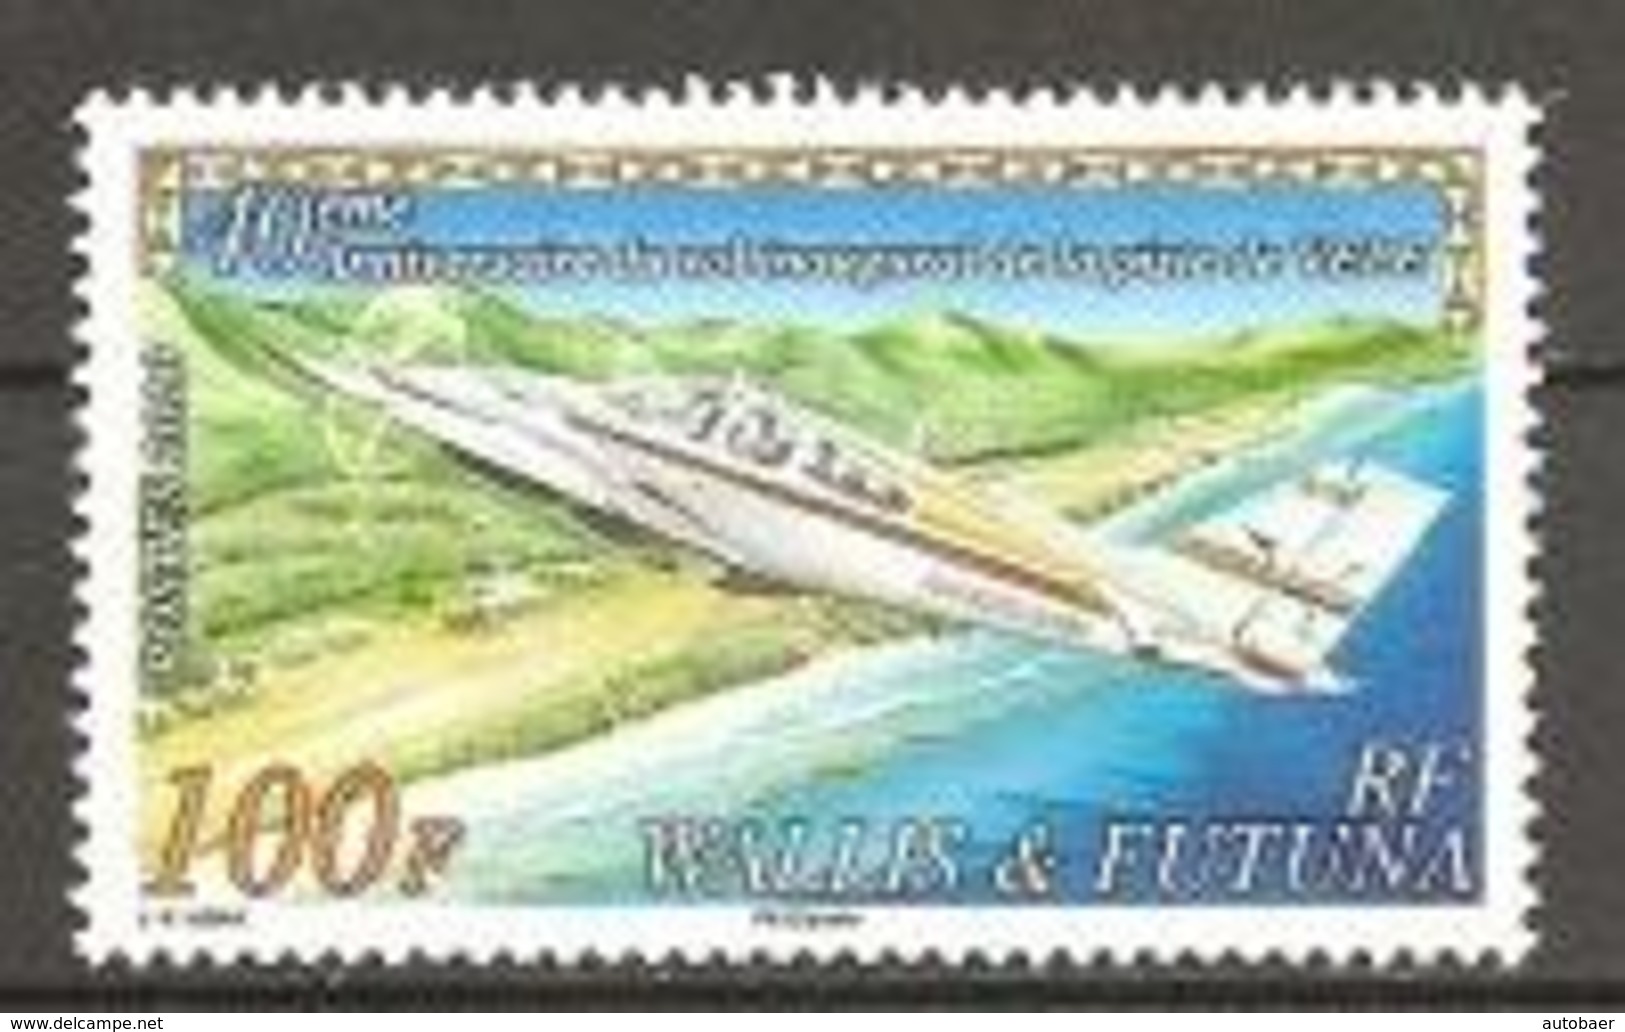 Wallis Und Et Futuna 2010 Aeroport Airport Flugplatz Vele Michel No. 1014 MNH Postfrisch Neuf - Neufs